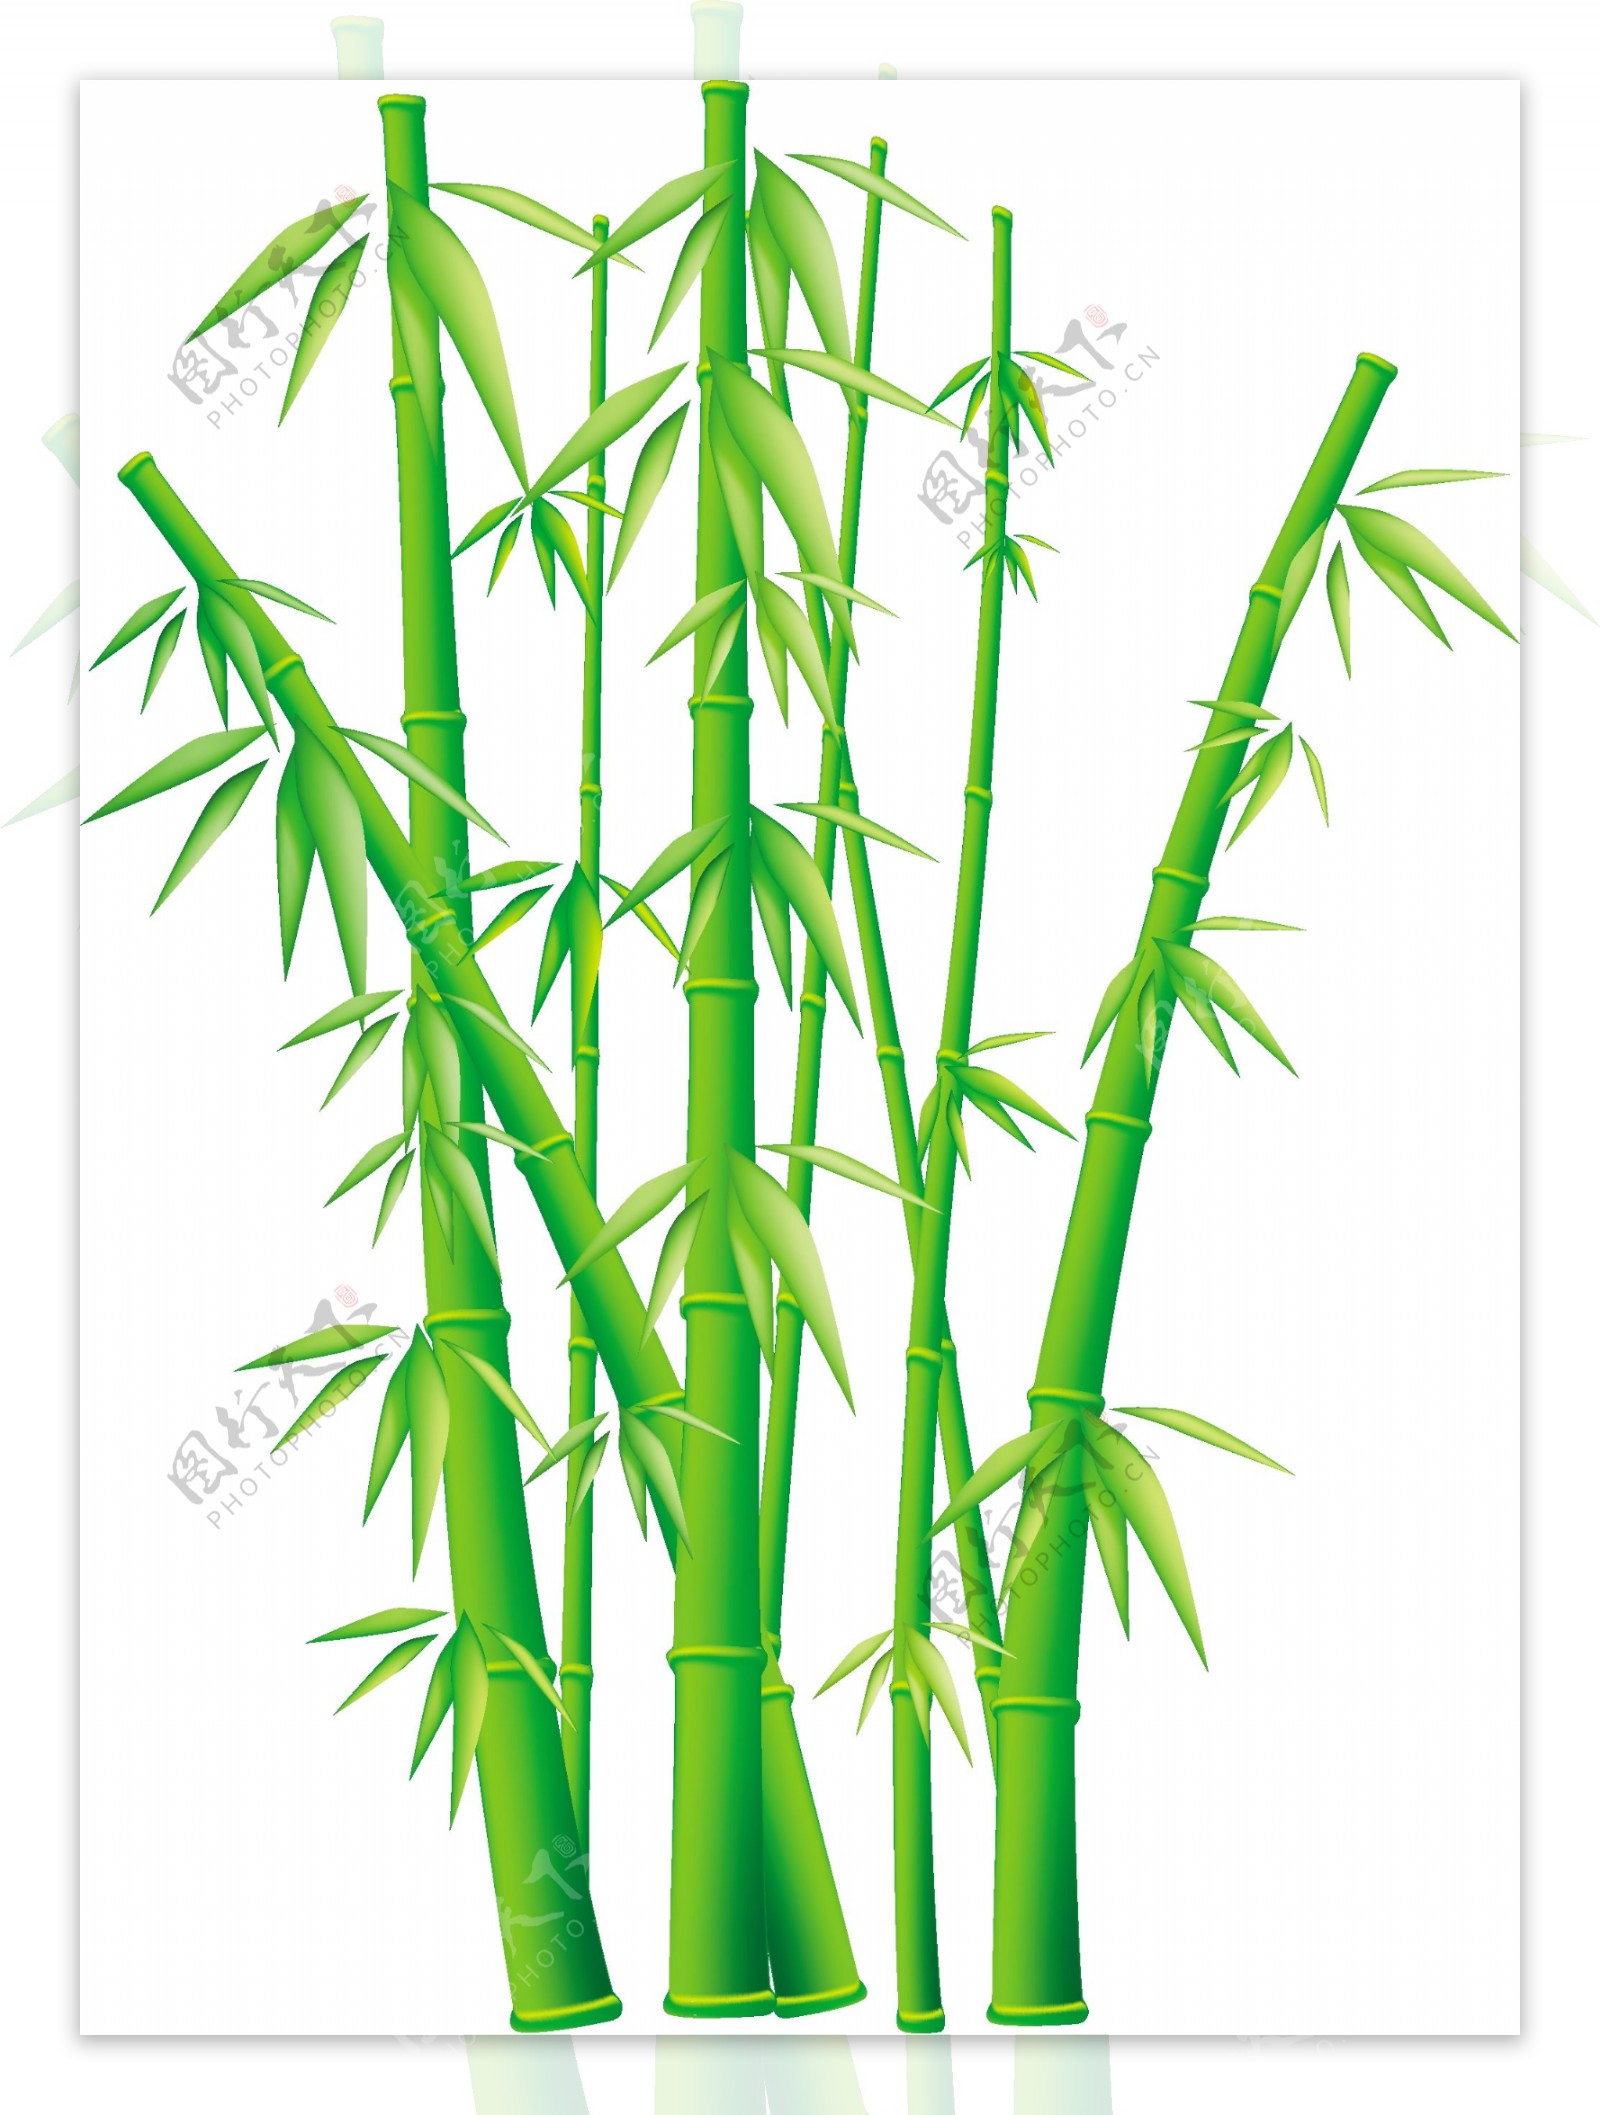 翠绿的竹子矢量图下载